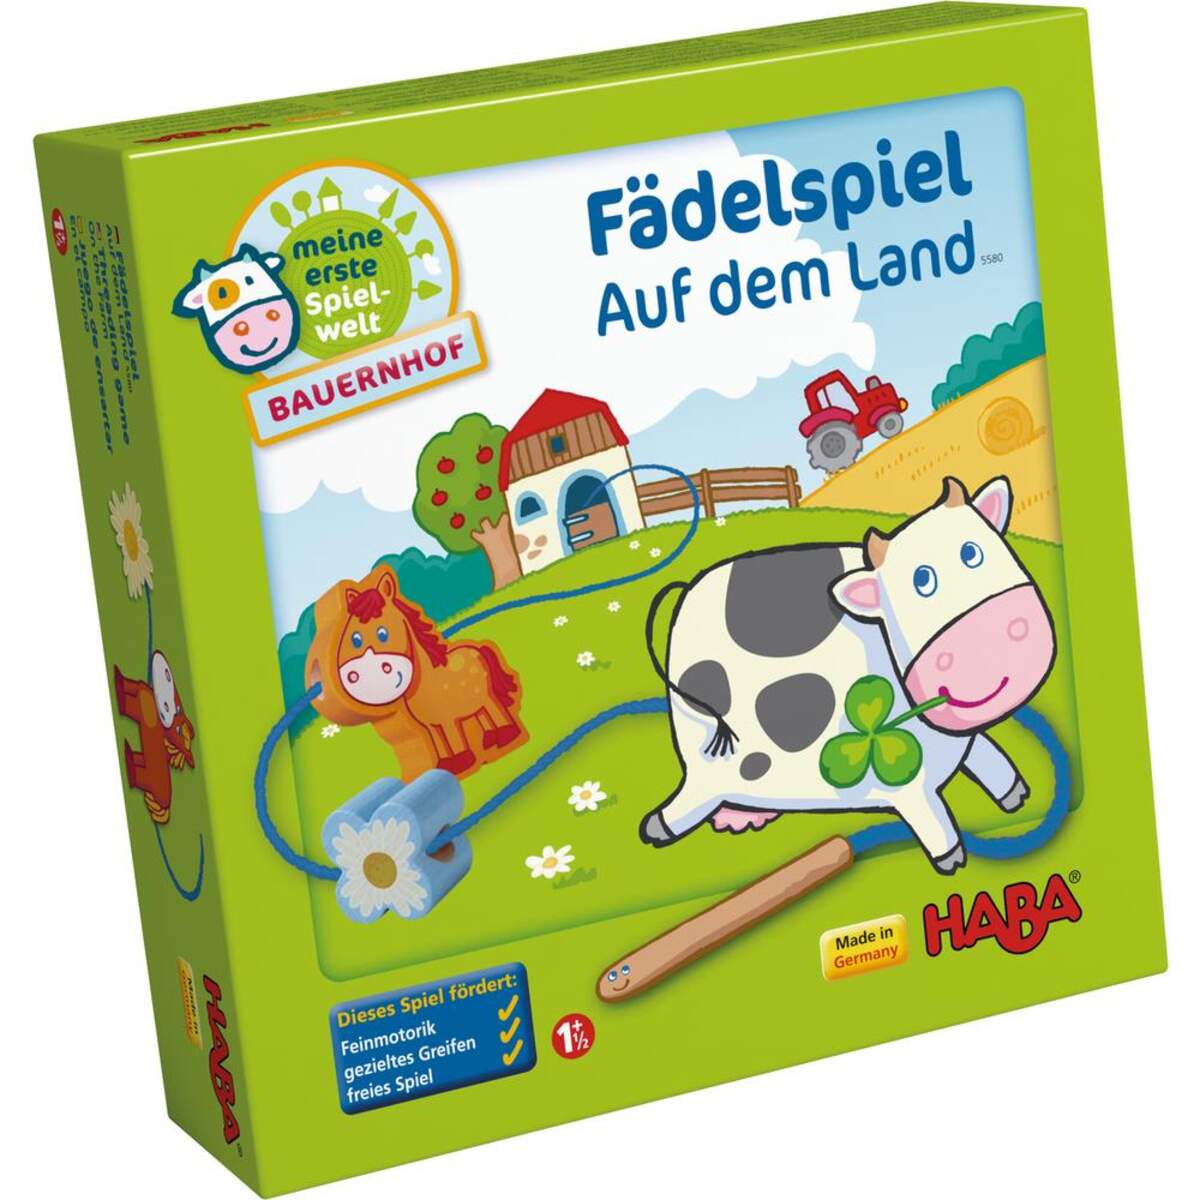 HABA 5580 Meine erste Spielwelt Bauernhof Fädelspiel auf dem Land